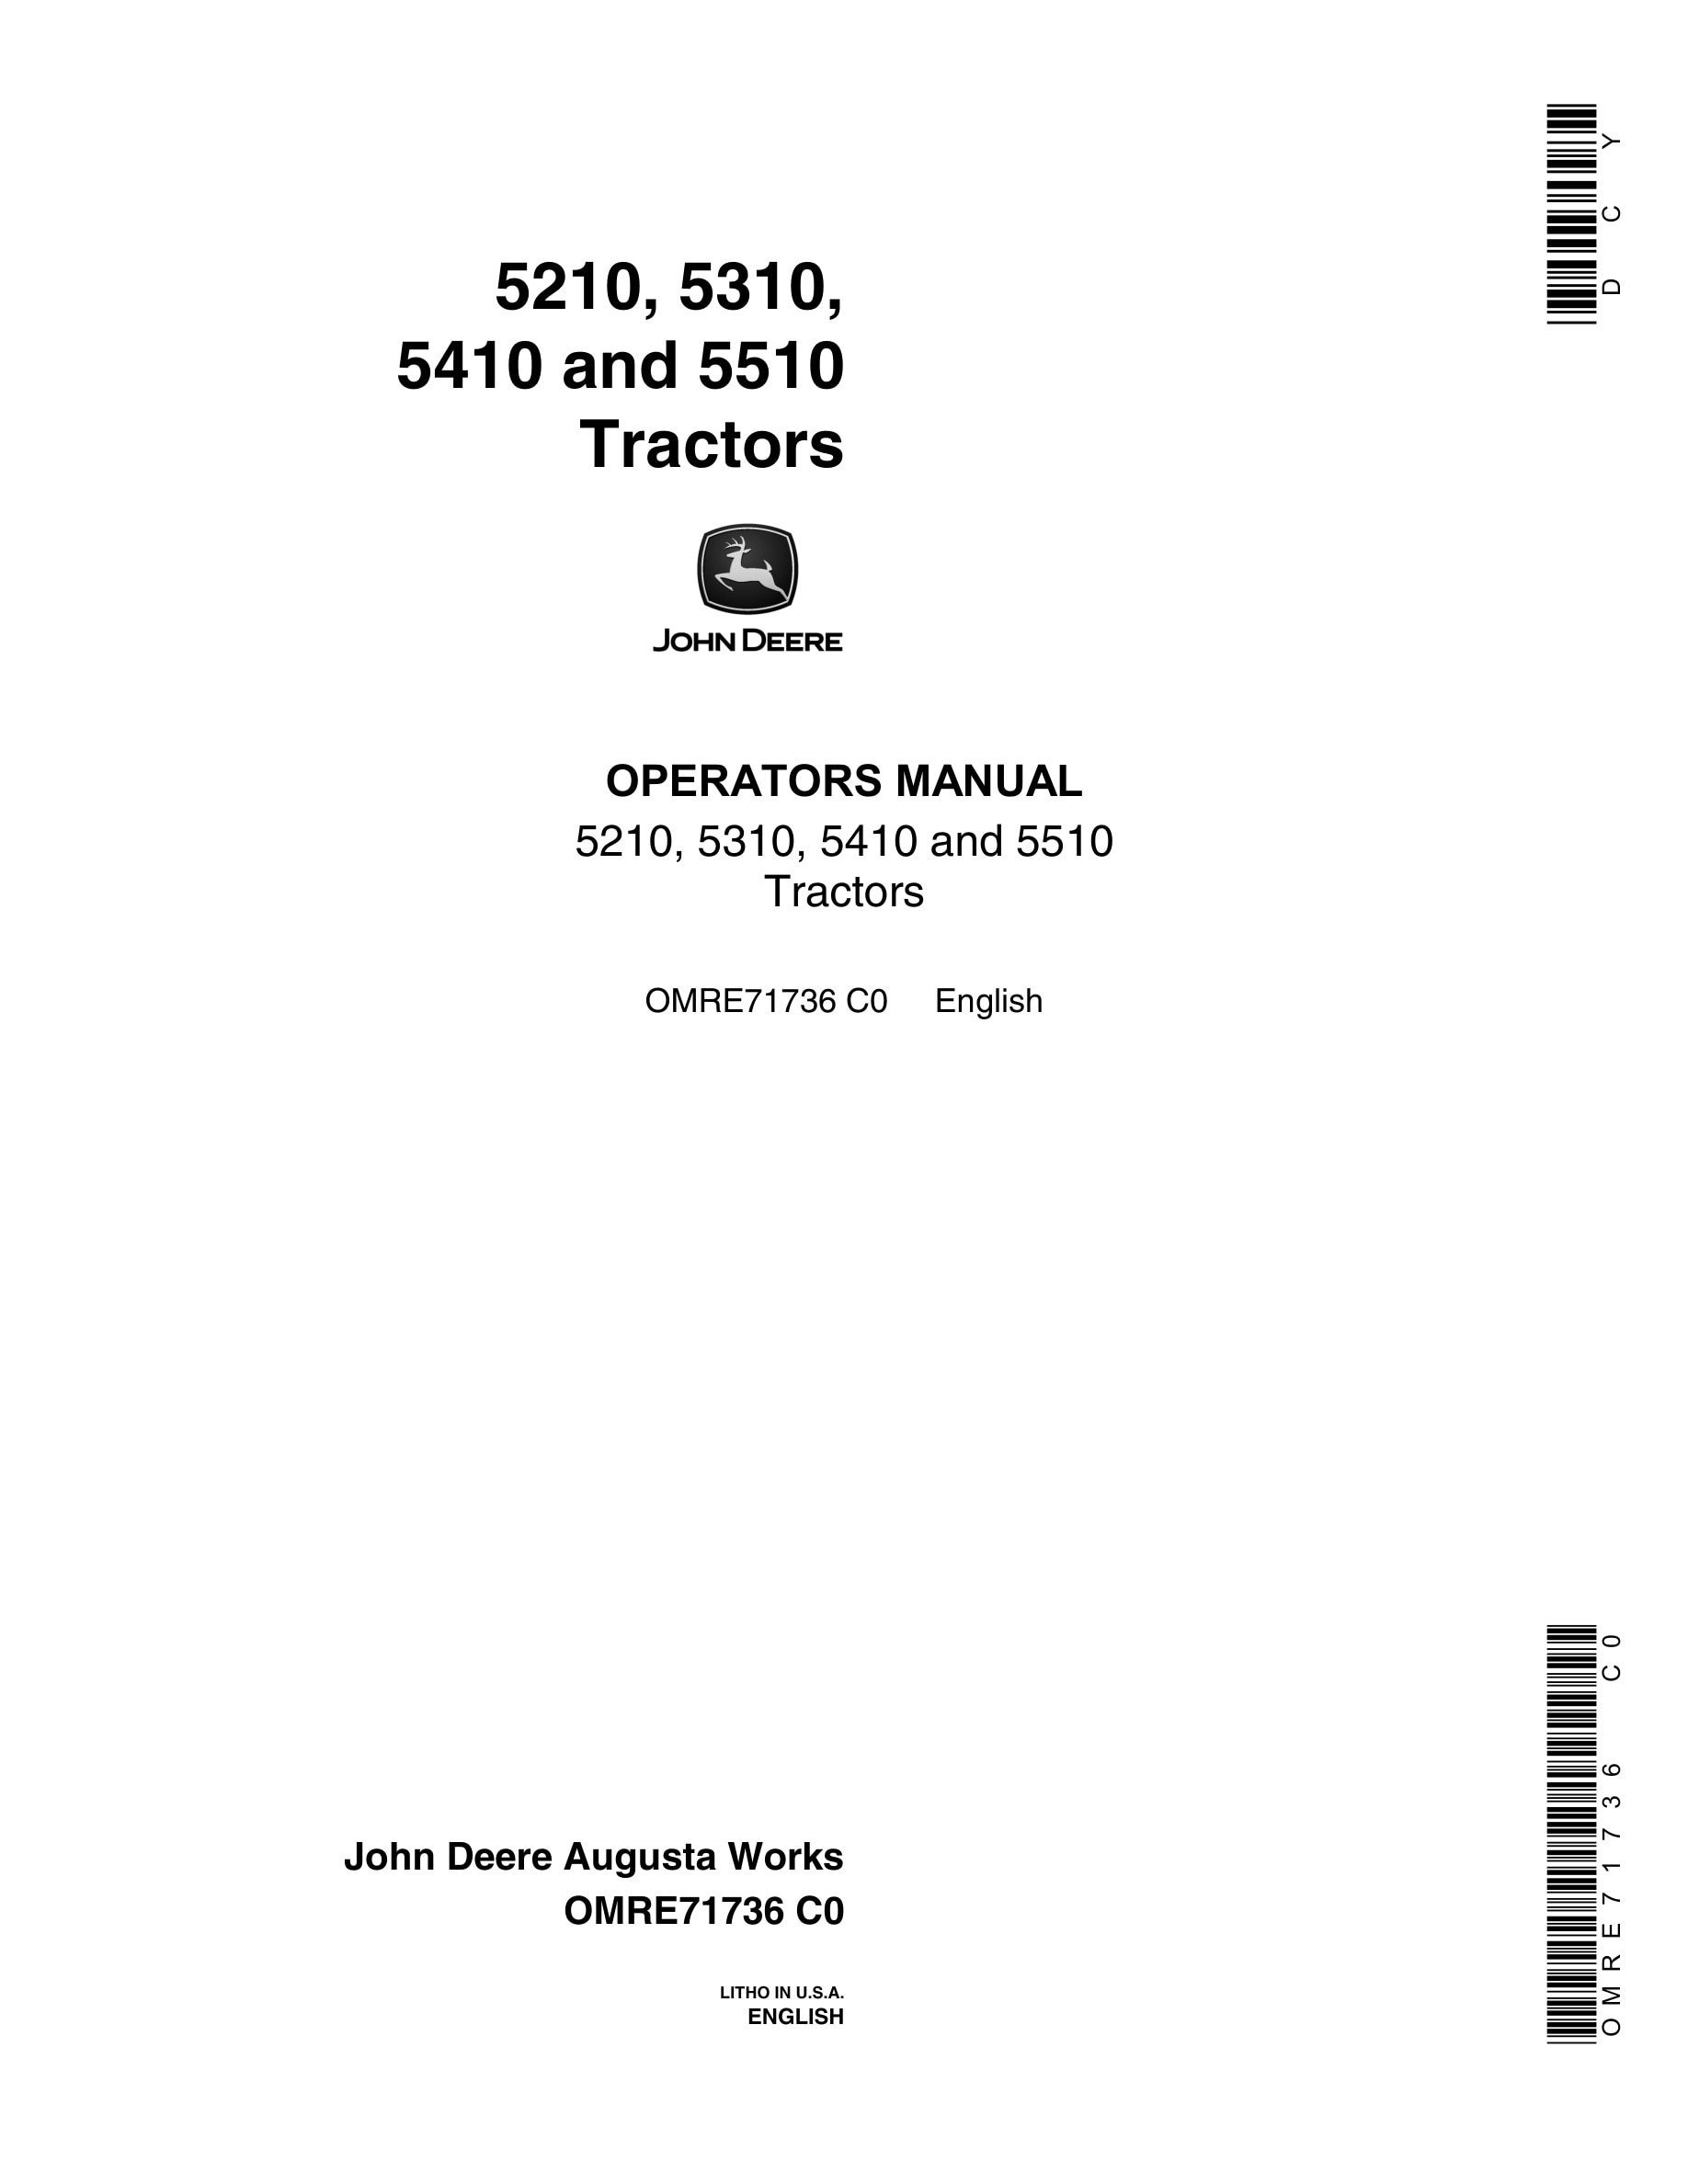 John Deere 5210, 5310, 5410 and 5510 Tractor Operator Manual OMRE71736-1